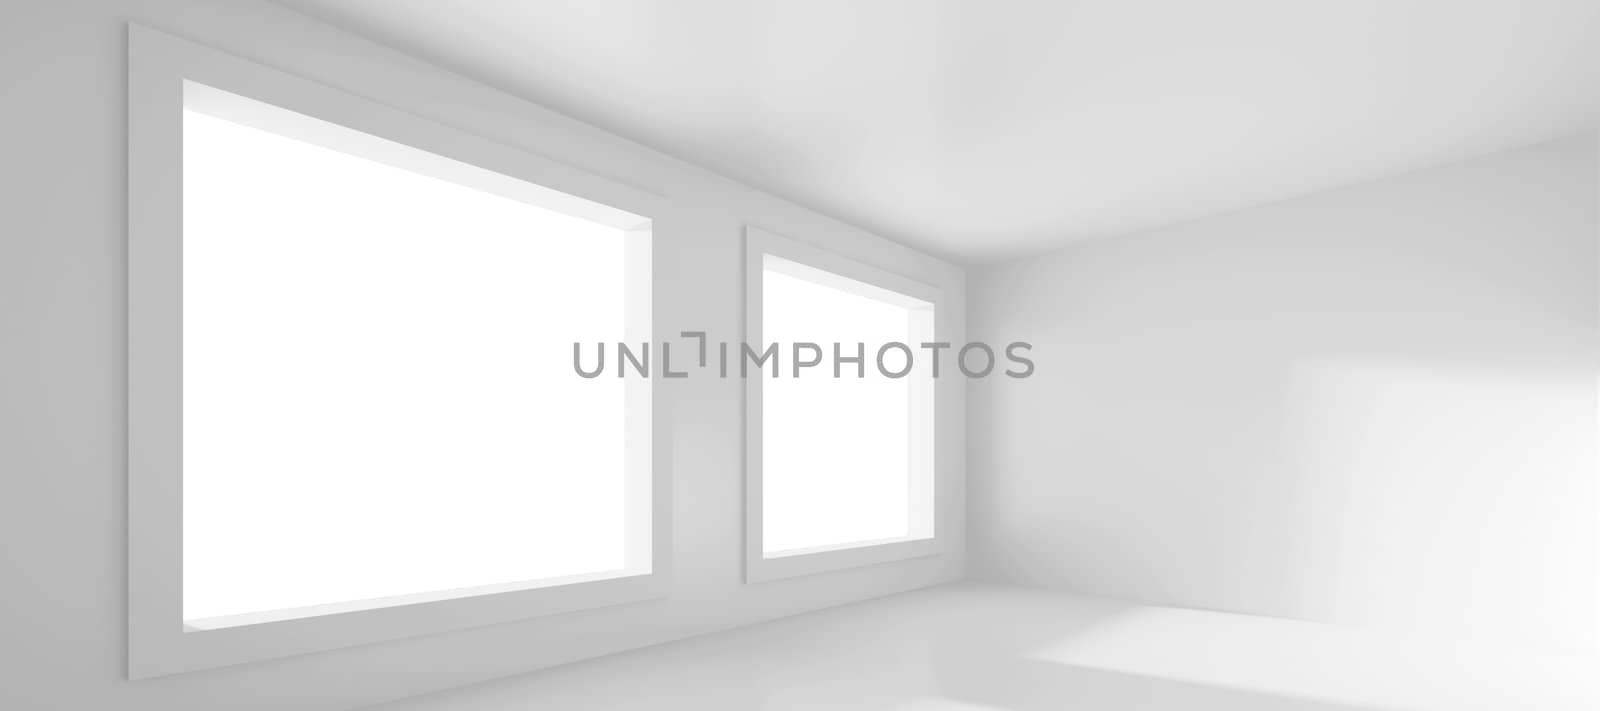 Empty Room by maxkrasnov